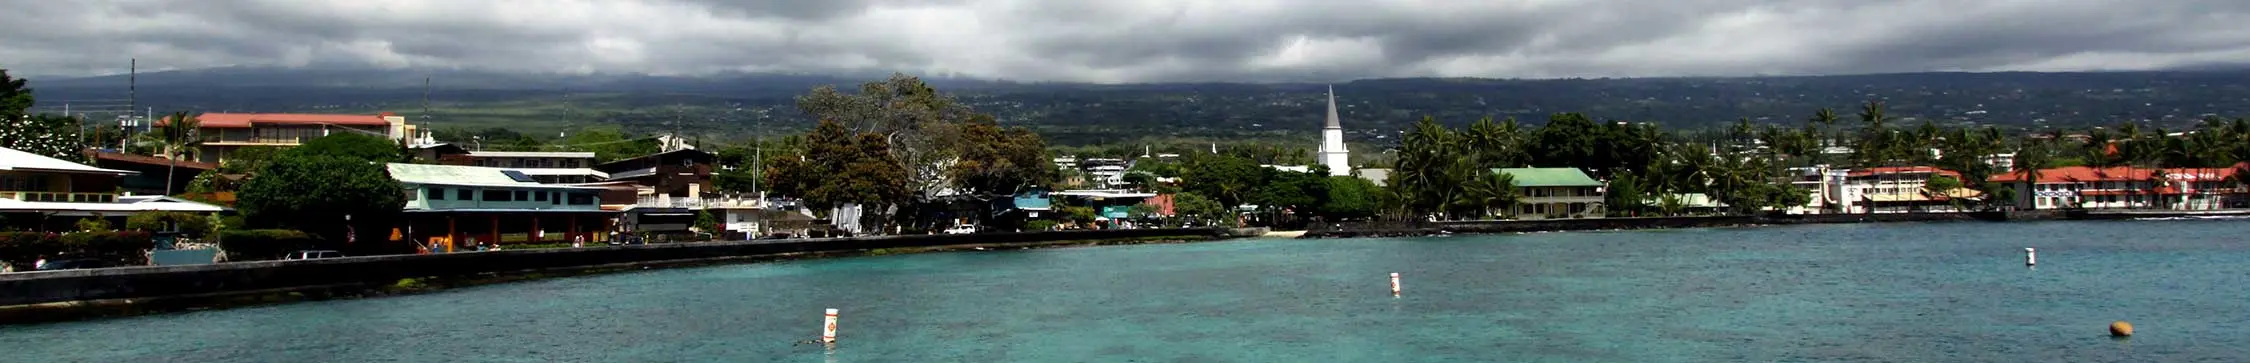 kailua-kona-hawaii-banner